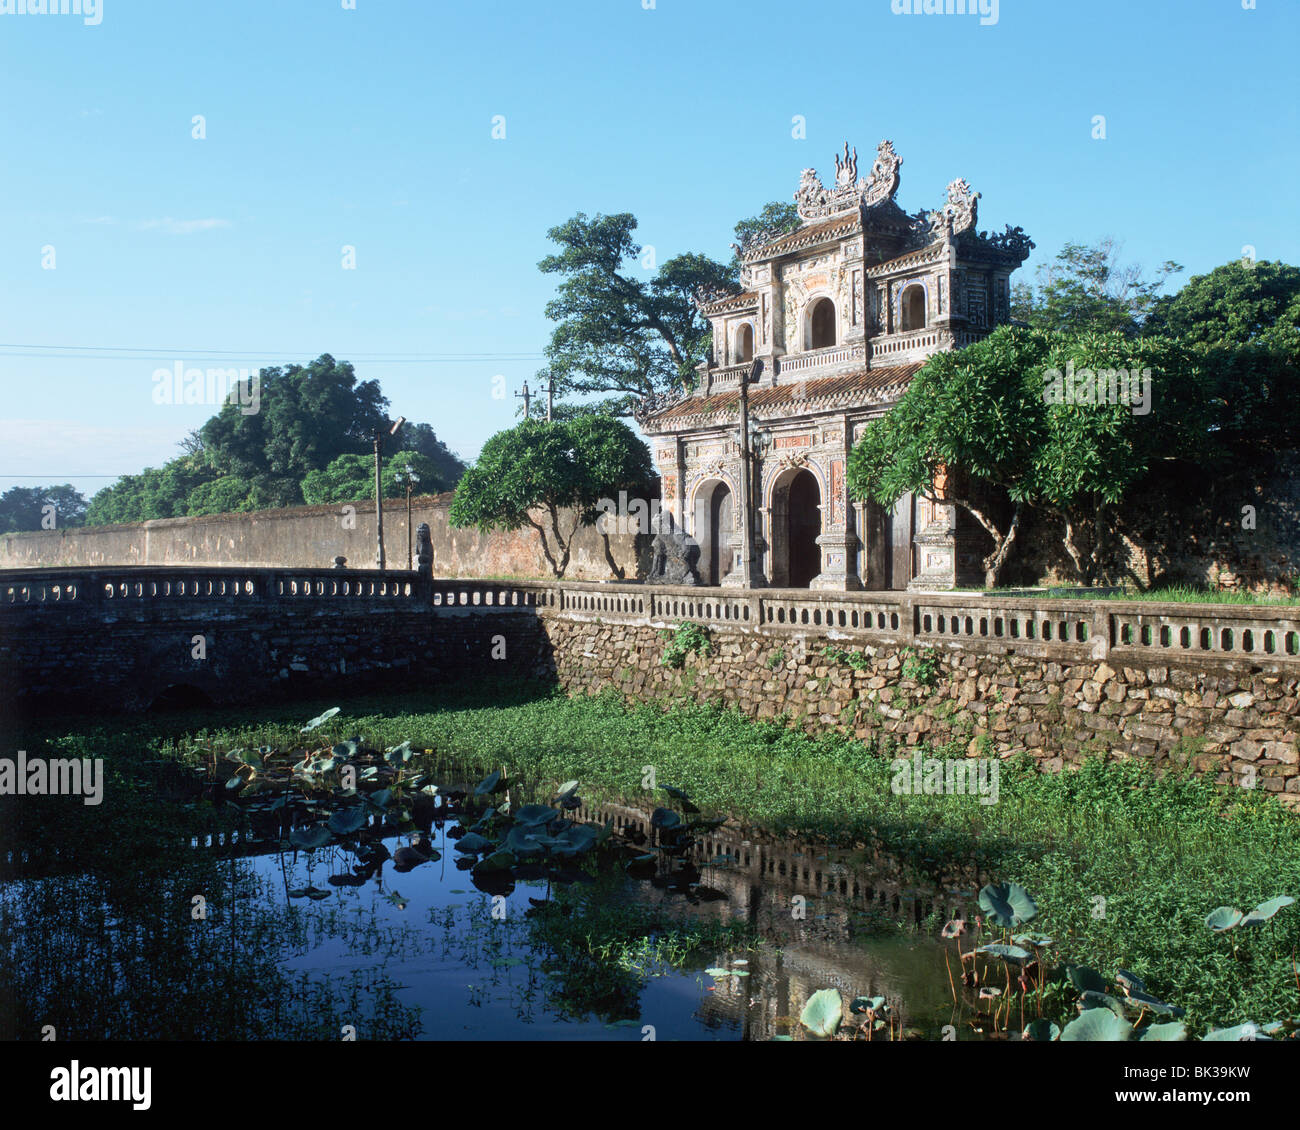 La porte de l'humanité (Porte de l'Est), la citadelle de Hue, Site du patrimoine mondial de l'UNESCO, le Vietnam, l'Indochine, l'Asie du Sud-Est, Asie Banque D'Images